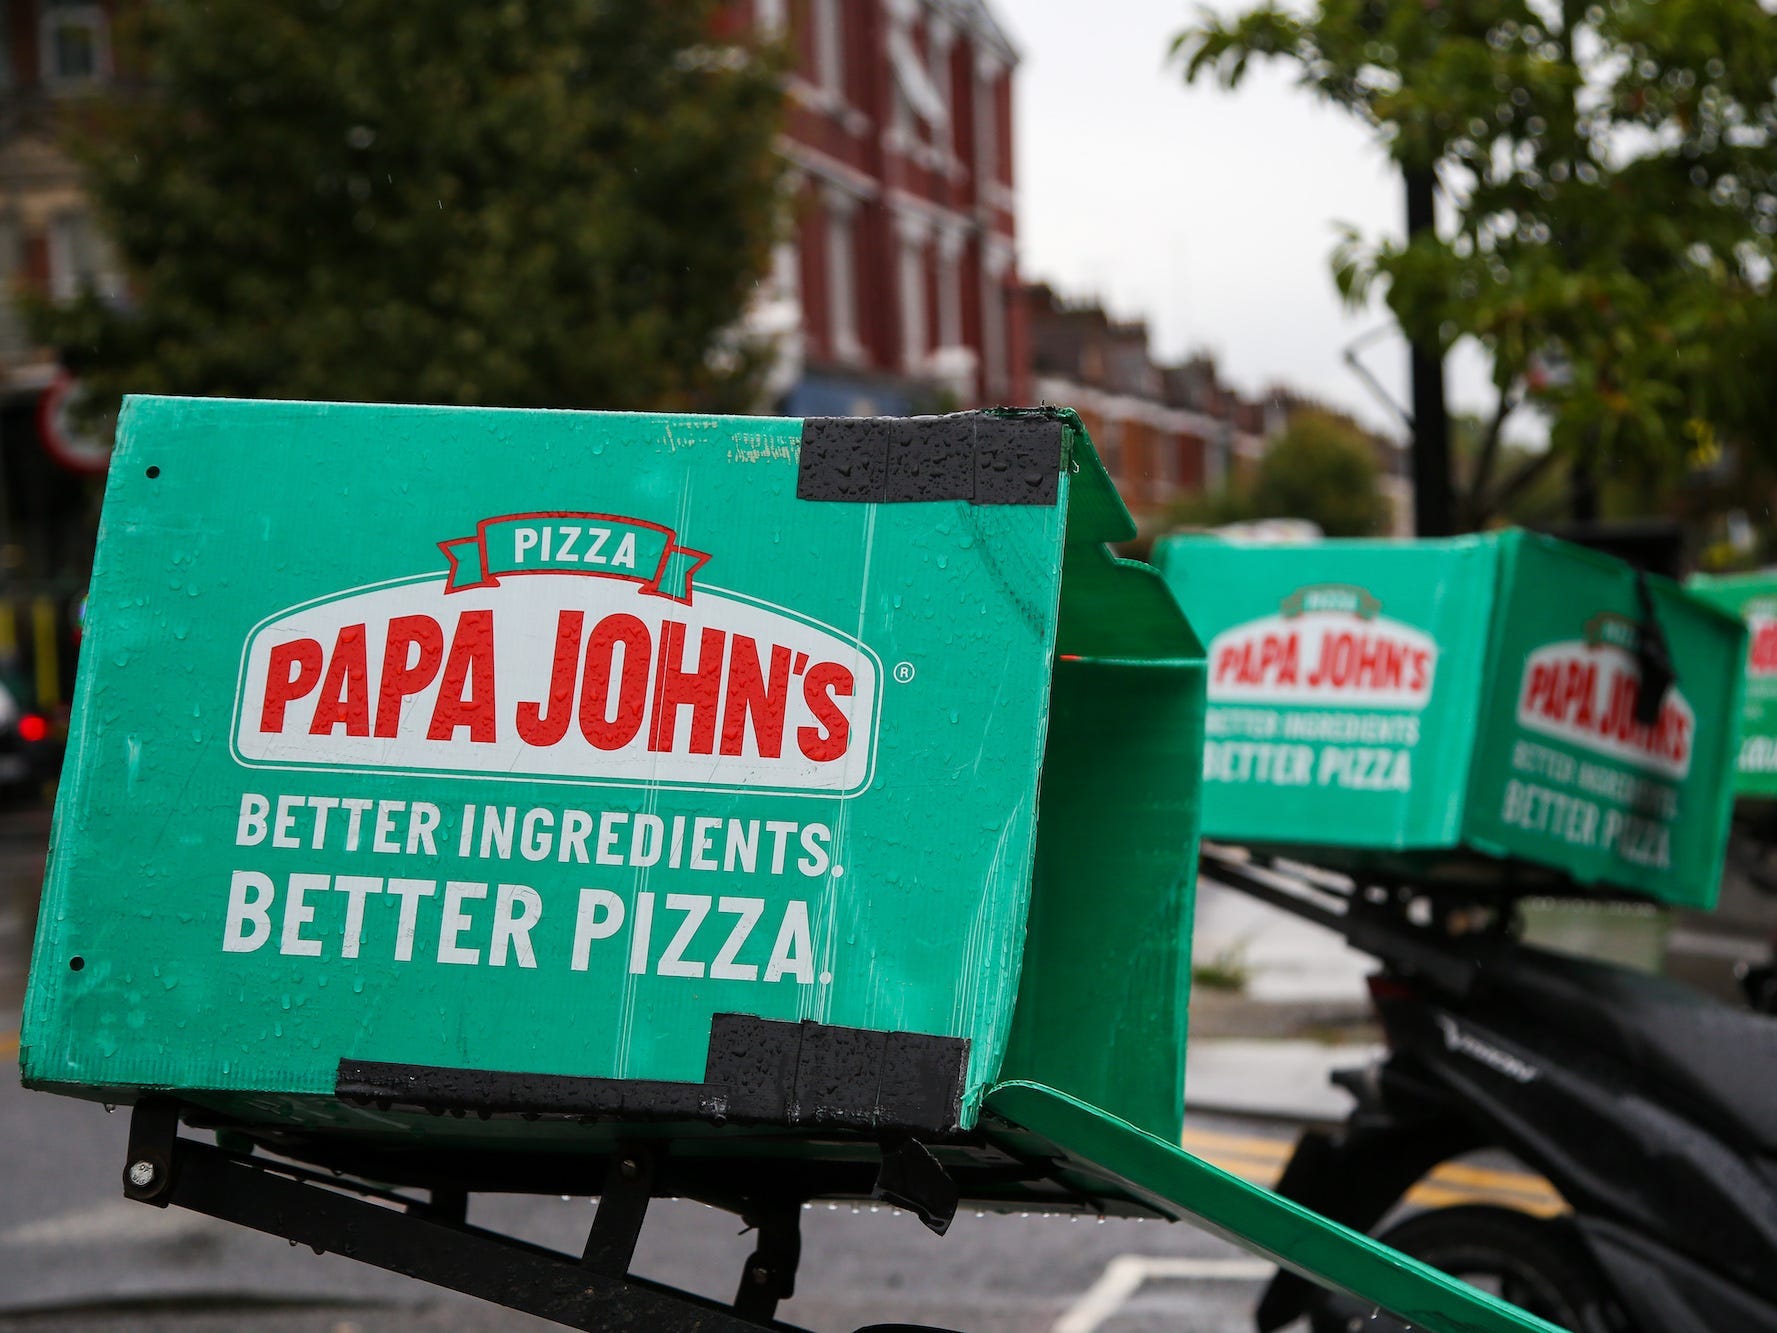 Papa Johns Pizzalieferfahrräder parkten vor seiner Filiale in London.